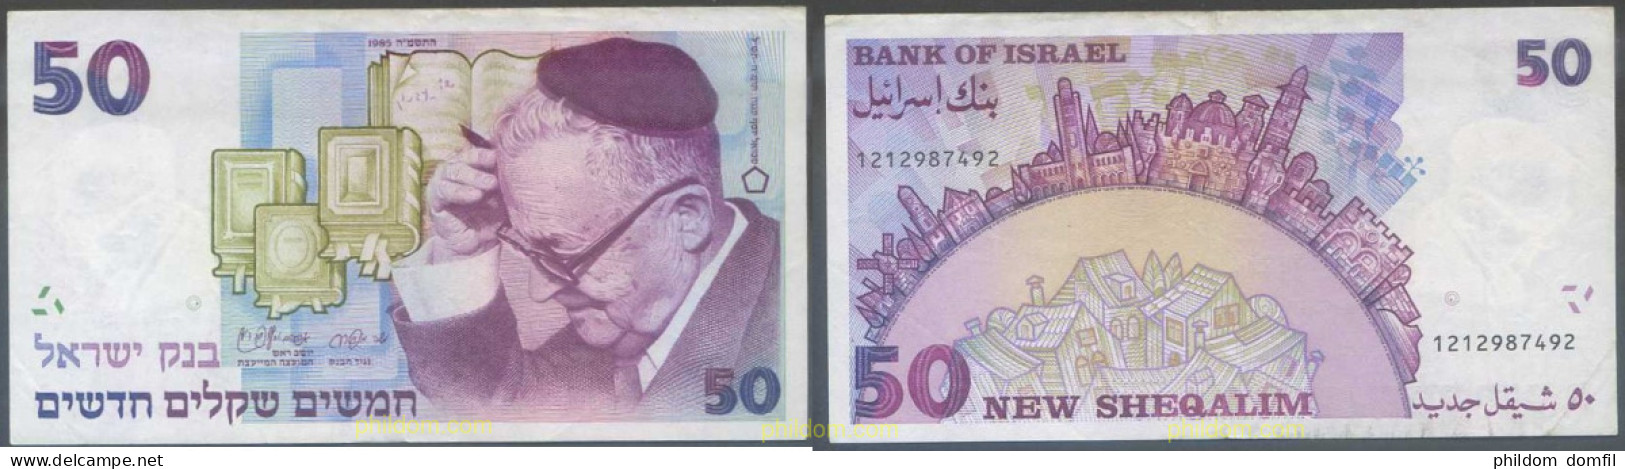 5403 ISRAEL 1985 ISRAEL 50 NEW SHEQALIM 1985 - Israel